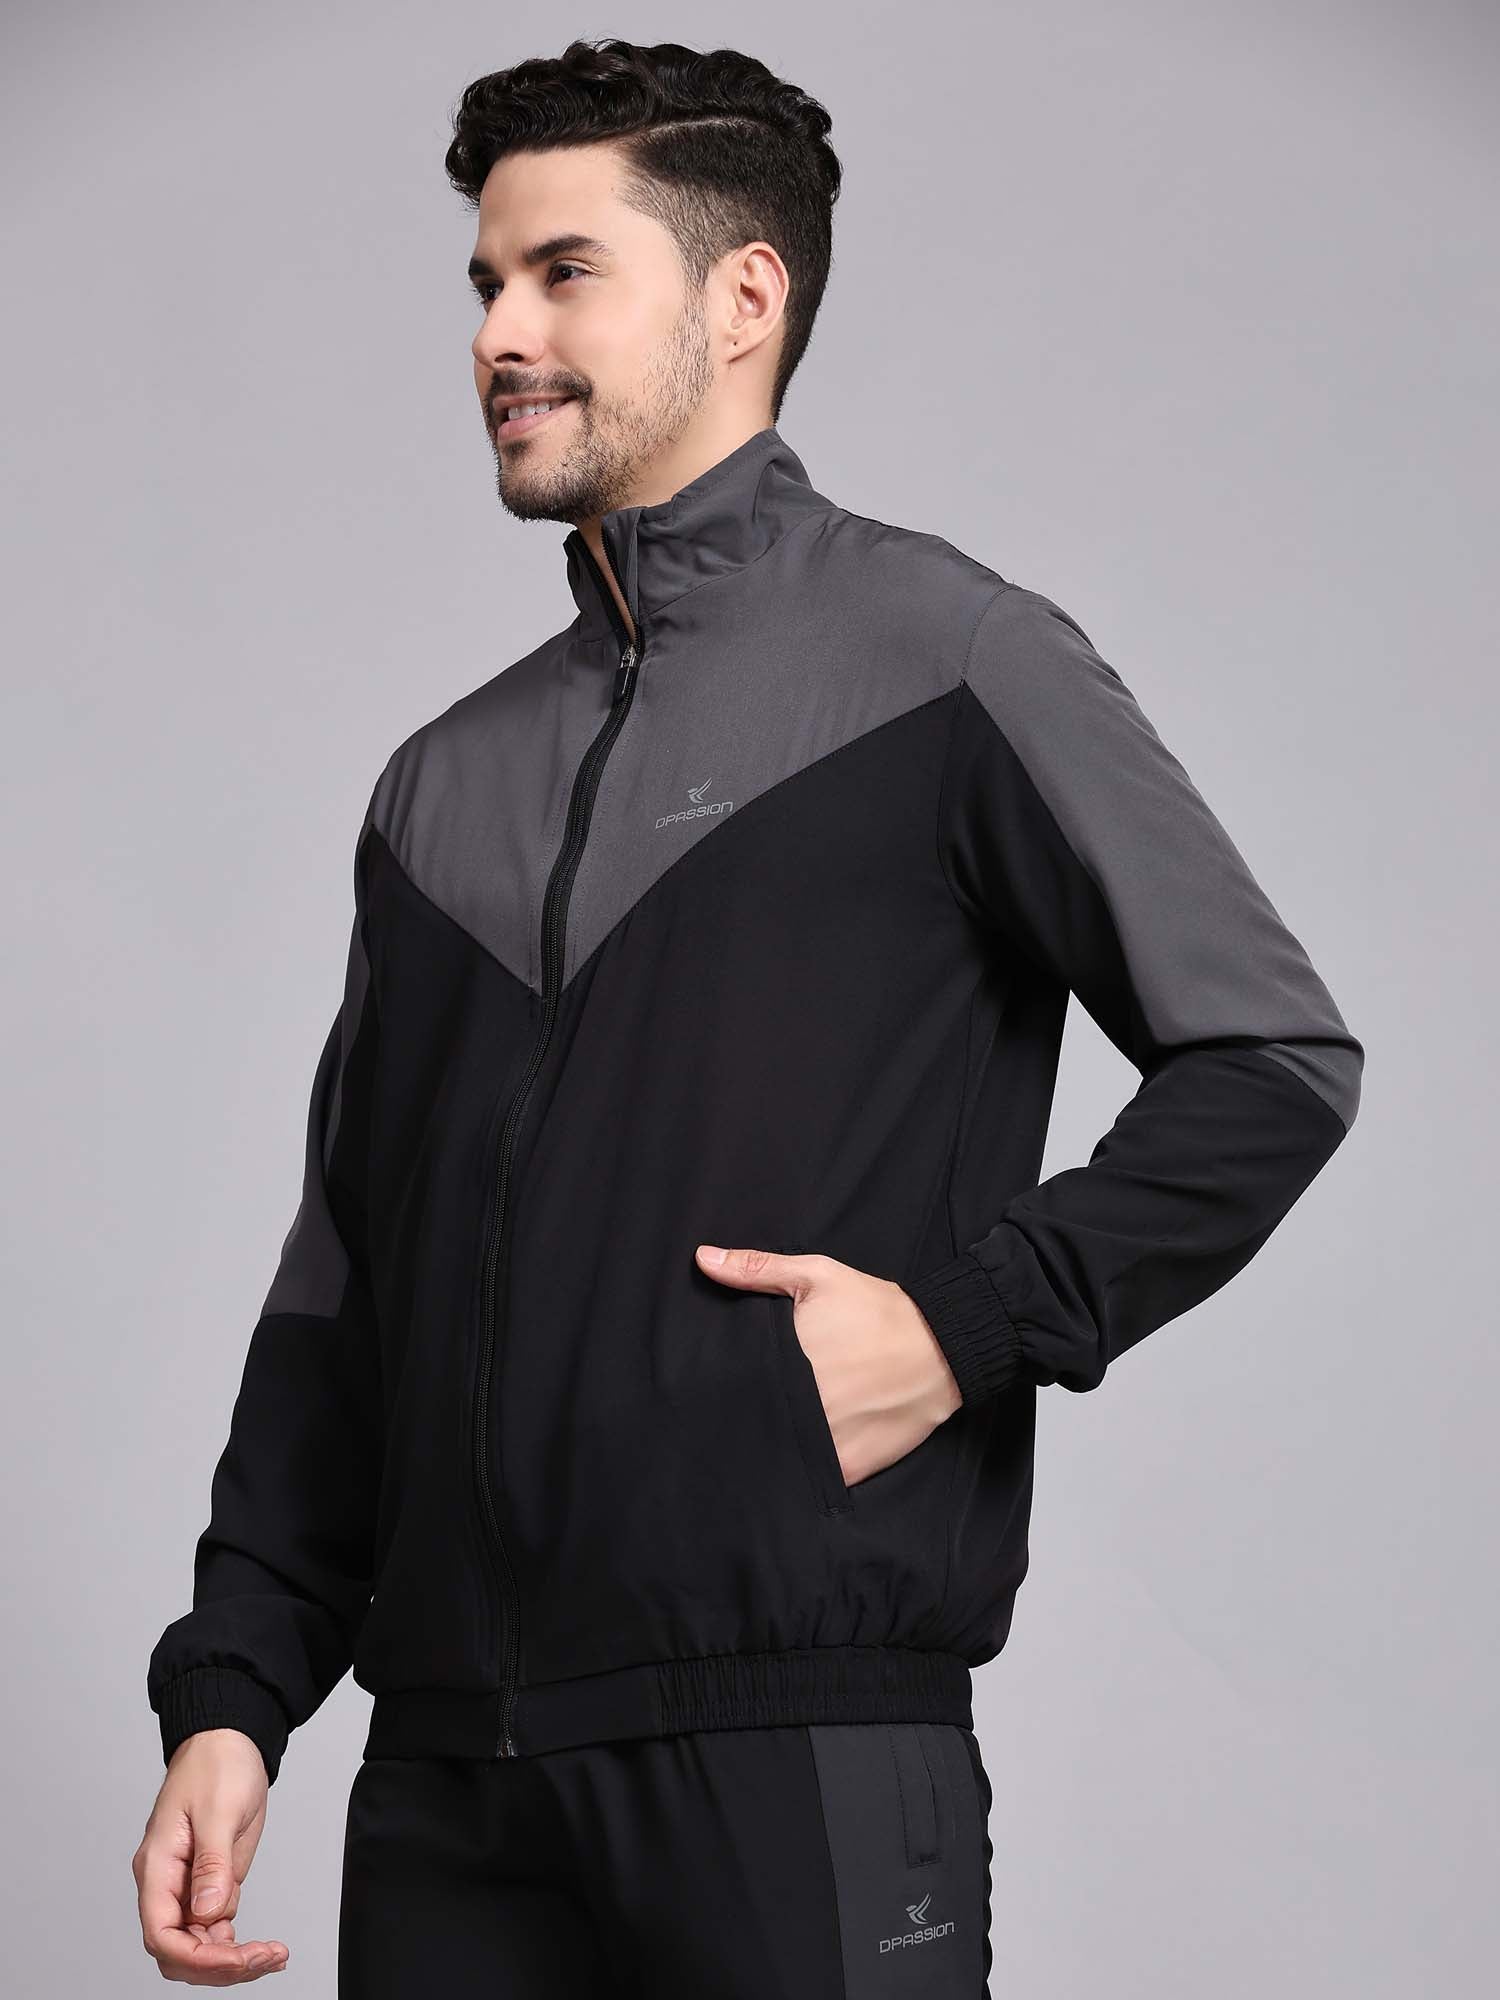 Nike youth xl jacket | eBay